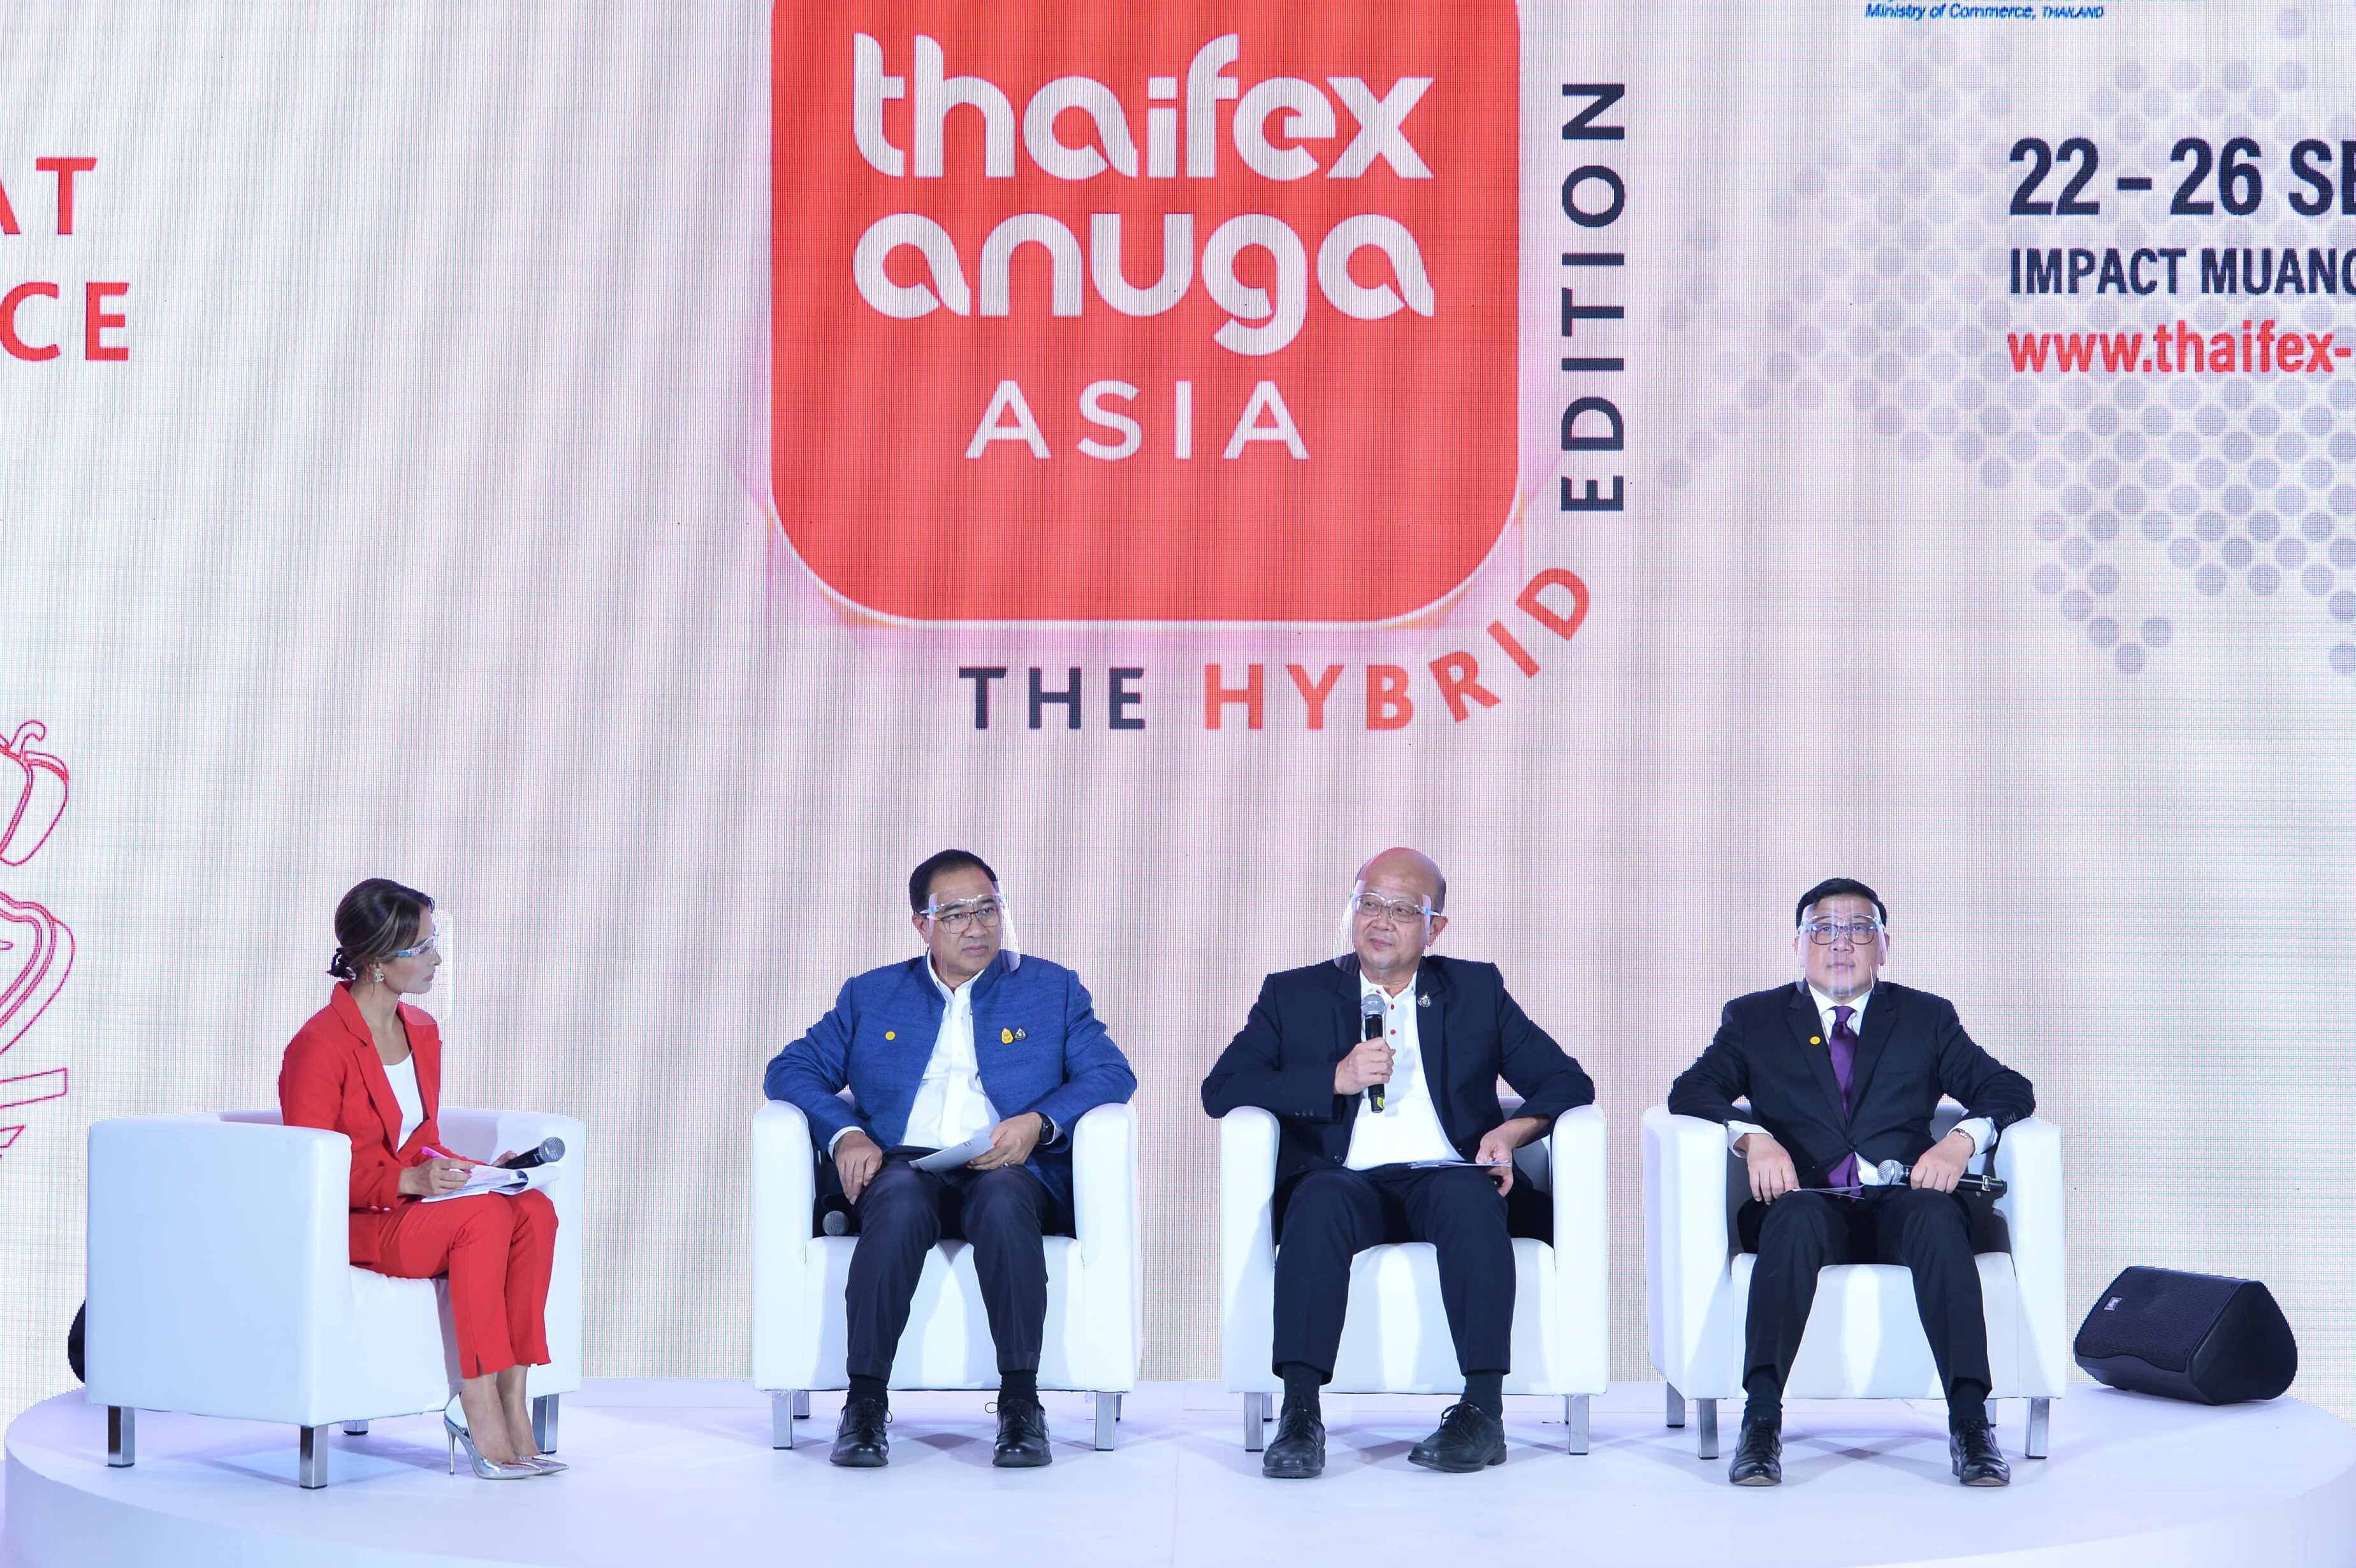 กรมส่งเสริมการค้าระหว่างประเทศ หอการค้าไทย และโคโลญเมสเซ่ ยืนยันจัดงาน “THAIFEX - ANUGA ASIA 2020” ในรูปแบบใหม่ “The Hybrid Edition”